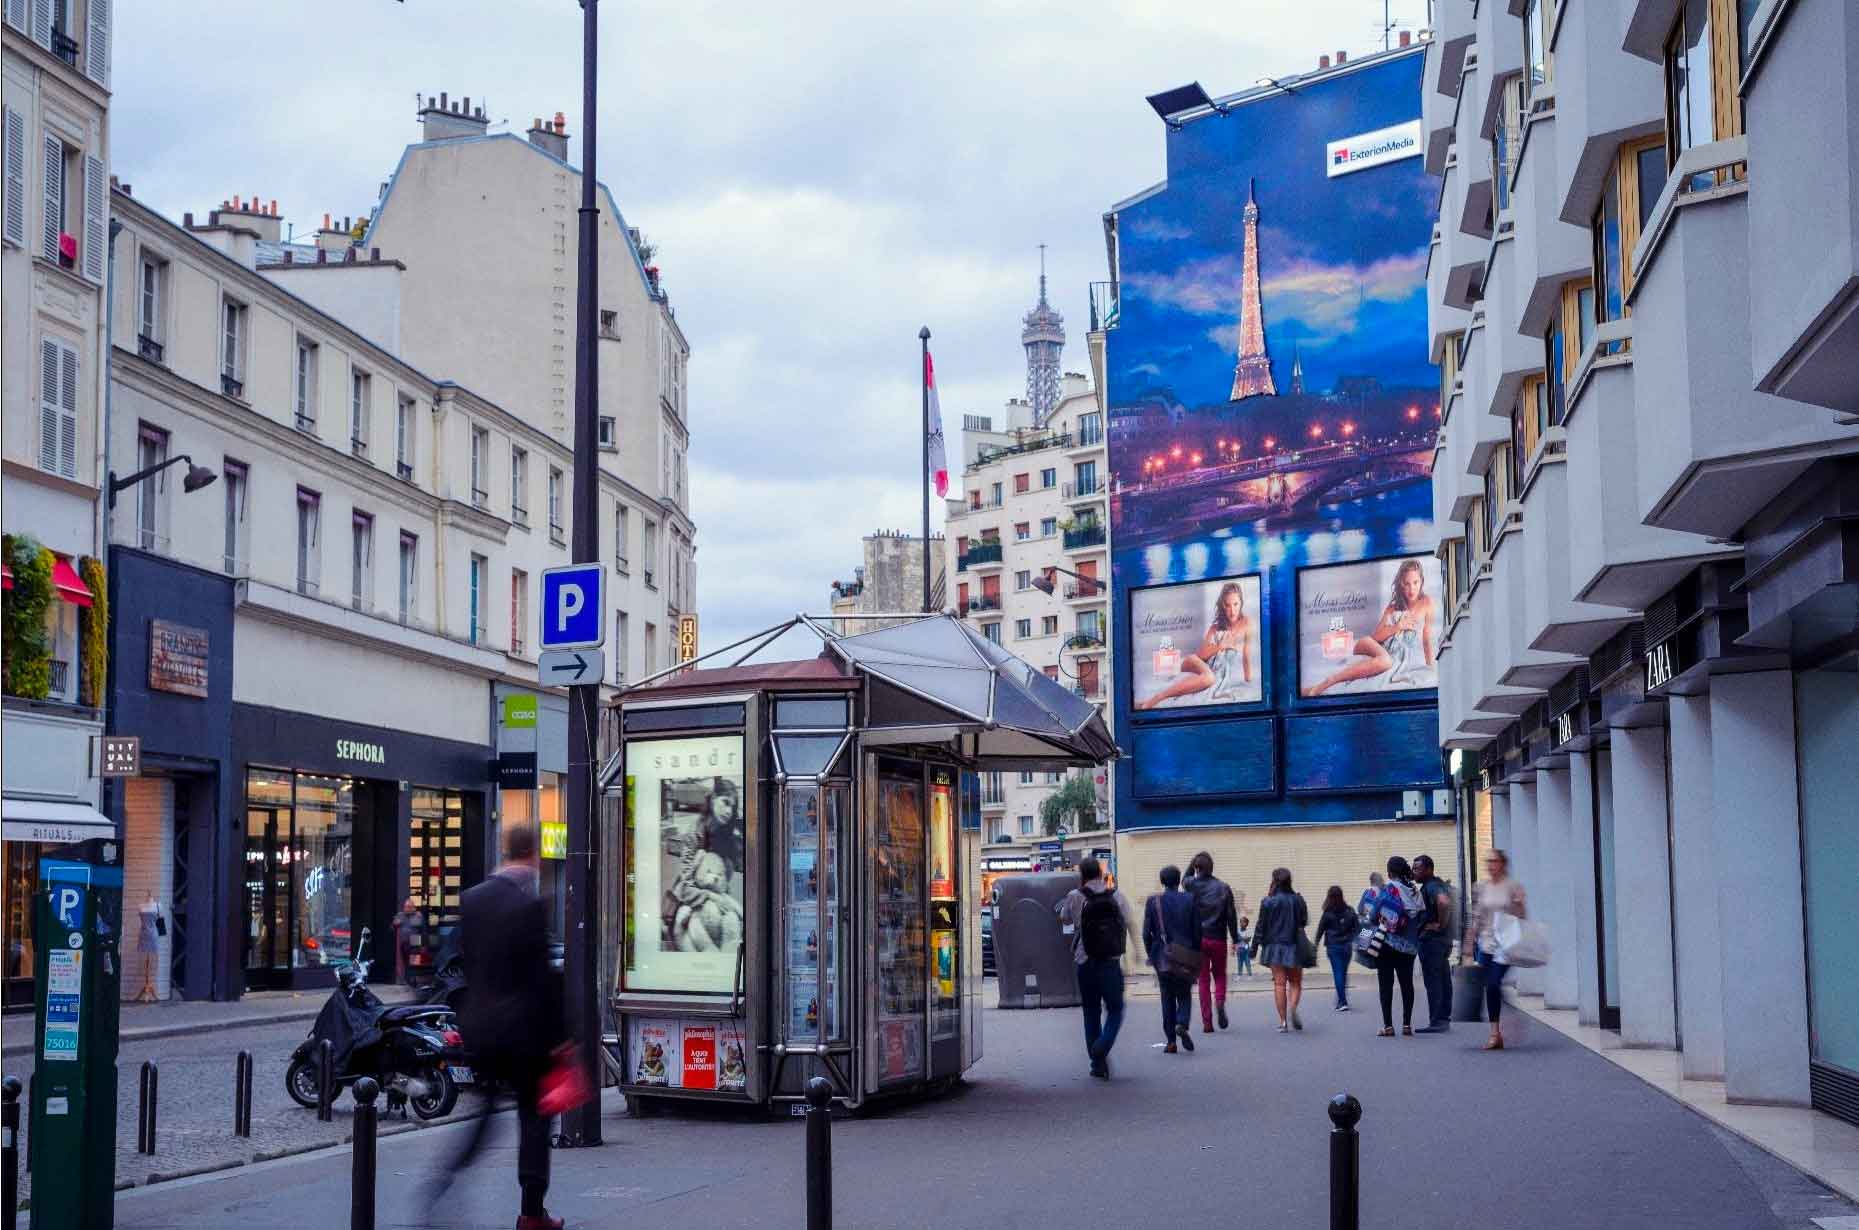 affichage publicitaire; Paris